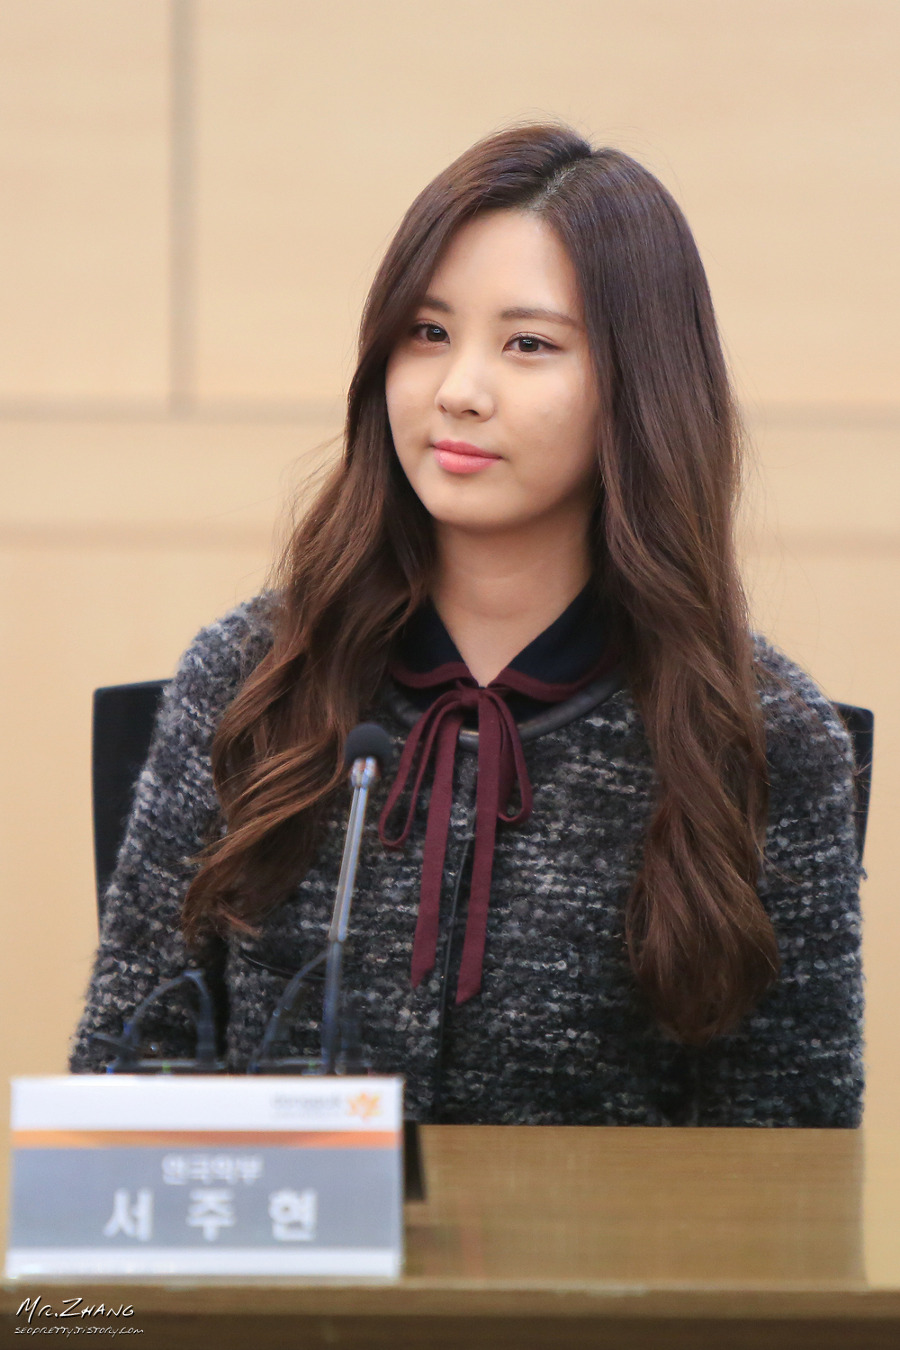 [PIC][19-11-2013]SeoHyun gửi tặng 100 triệu Won cho Trường ĐH Dongguk của cô vào trưa nay 21088A44528B340D2B6E2A